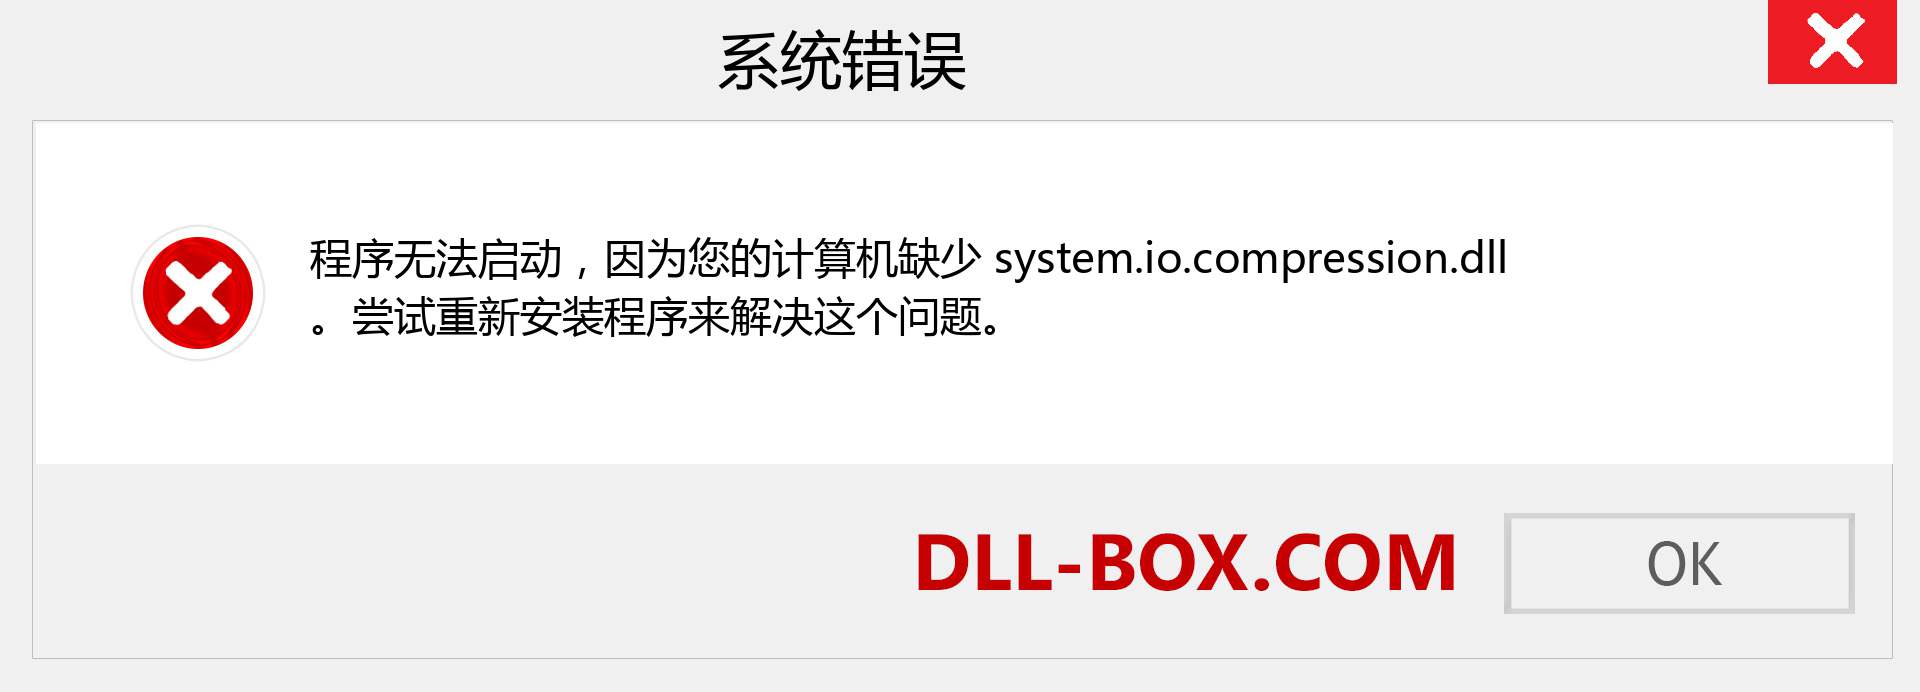 system.io.compression.dll 文件丢失？。 适用于 Windows 7、8、10 的下载 - 修复 Windows、照片、图像上的 system.io.compression dll 丢失错误